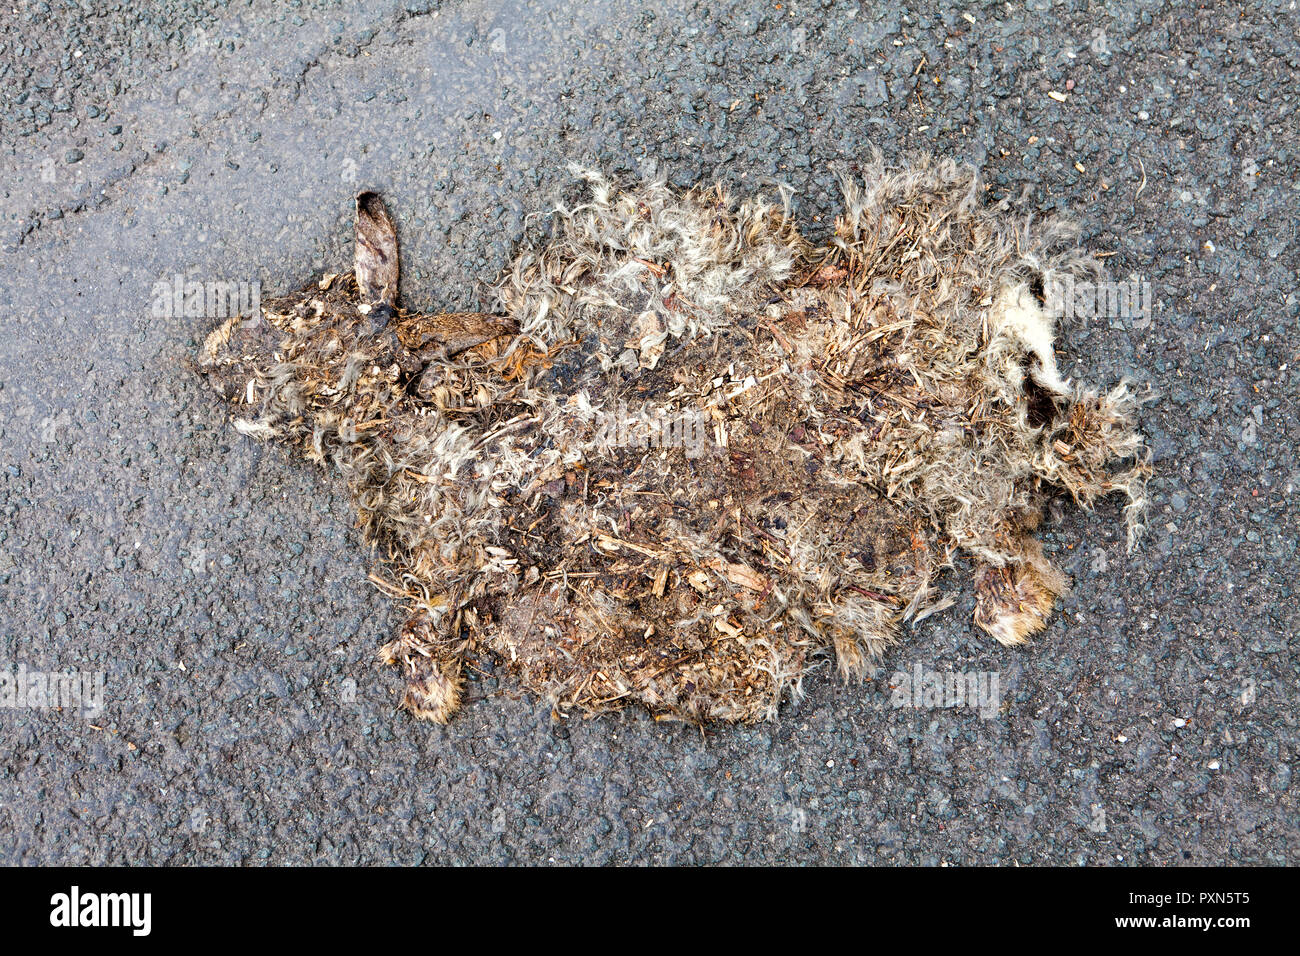 Lapin mort conduit sur une rue, Nordrhein-Westfalen, Germany, Europe Banque D'Images